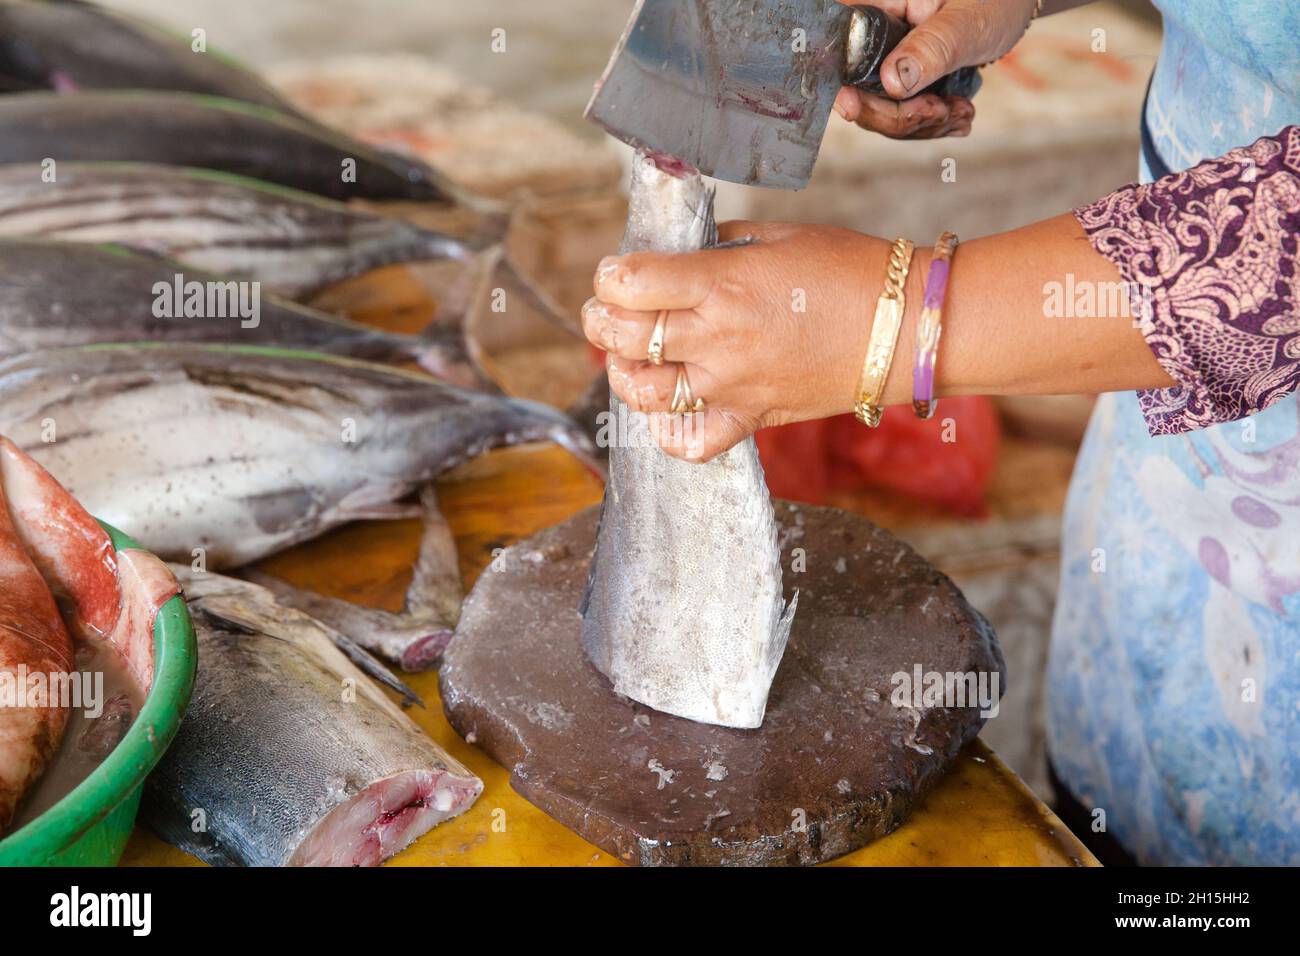 Schneiden Sie Thunfisch auf den Tisch eines Fischverkäufers auf dem Fischmarkt. Roher Thunfisch.der Verkäufer zerschnitt Thunfisch in Stücke. Stockfoto